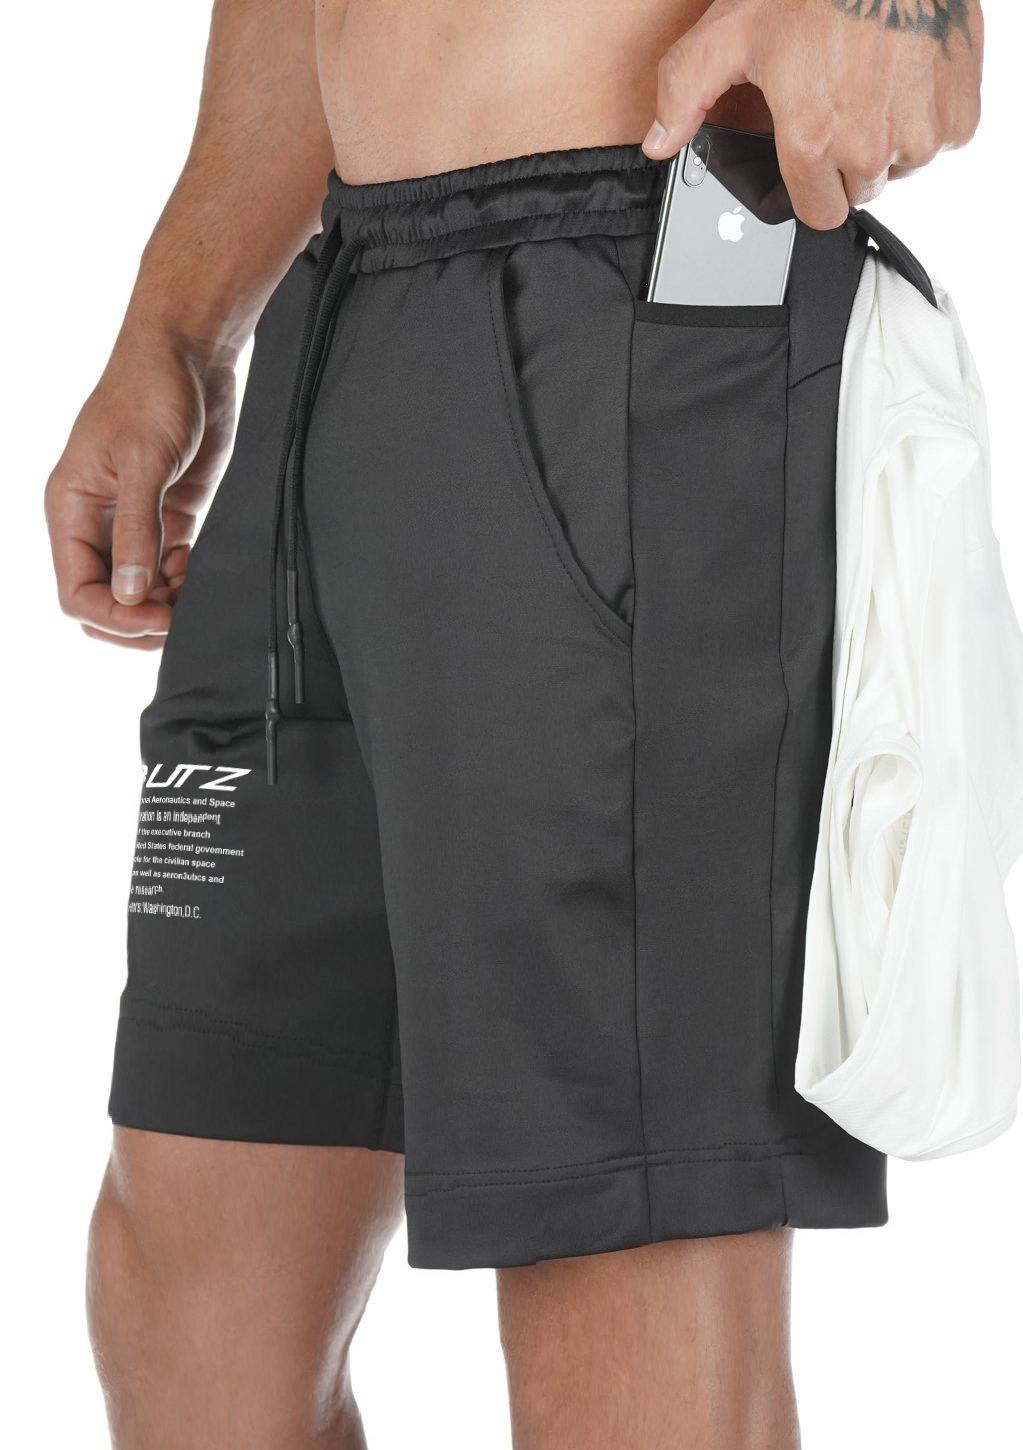 Quần đùi tập Gym nam vải thun thông hơi - túi có khóa - có túi hông để điện thoại - có khe gài áo thích hợp chơi thể thao, đá bóng, chạy bộ, tập Gym